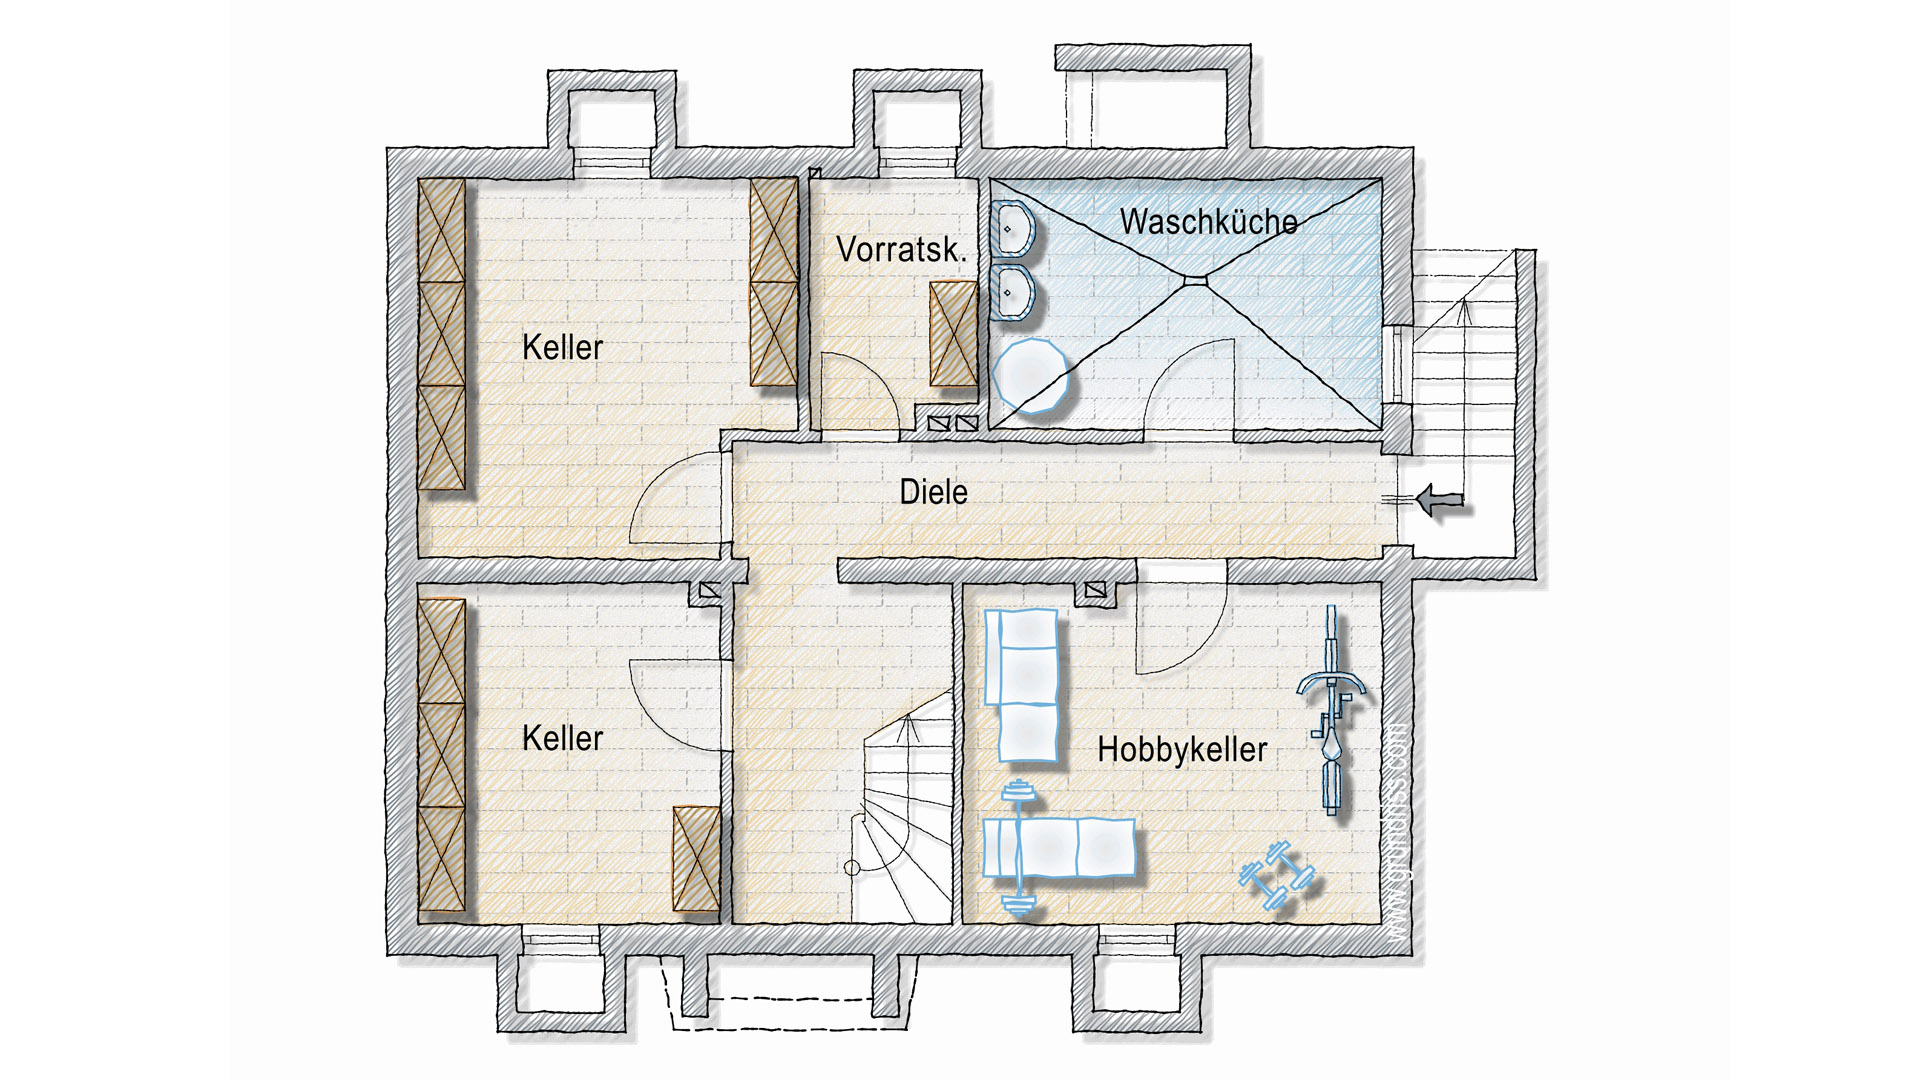 Birken-Honigsessen: Preiswertes Einfamilienhaus, Kellergeschoss: 55 m² Nutzfläche